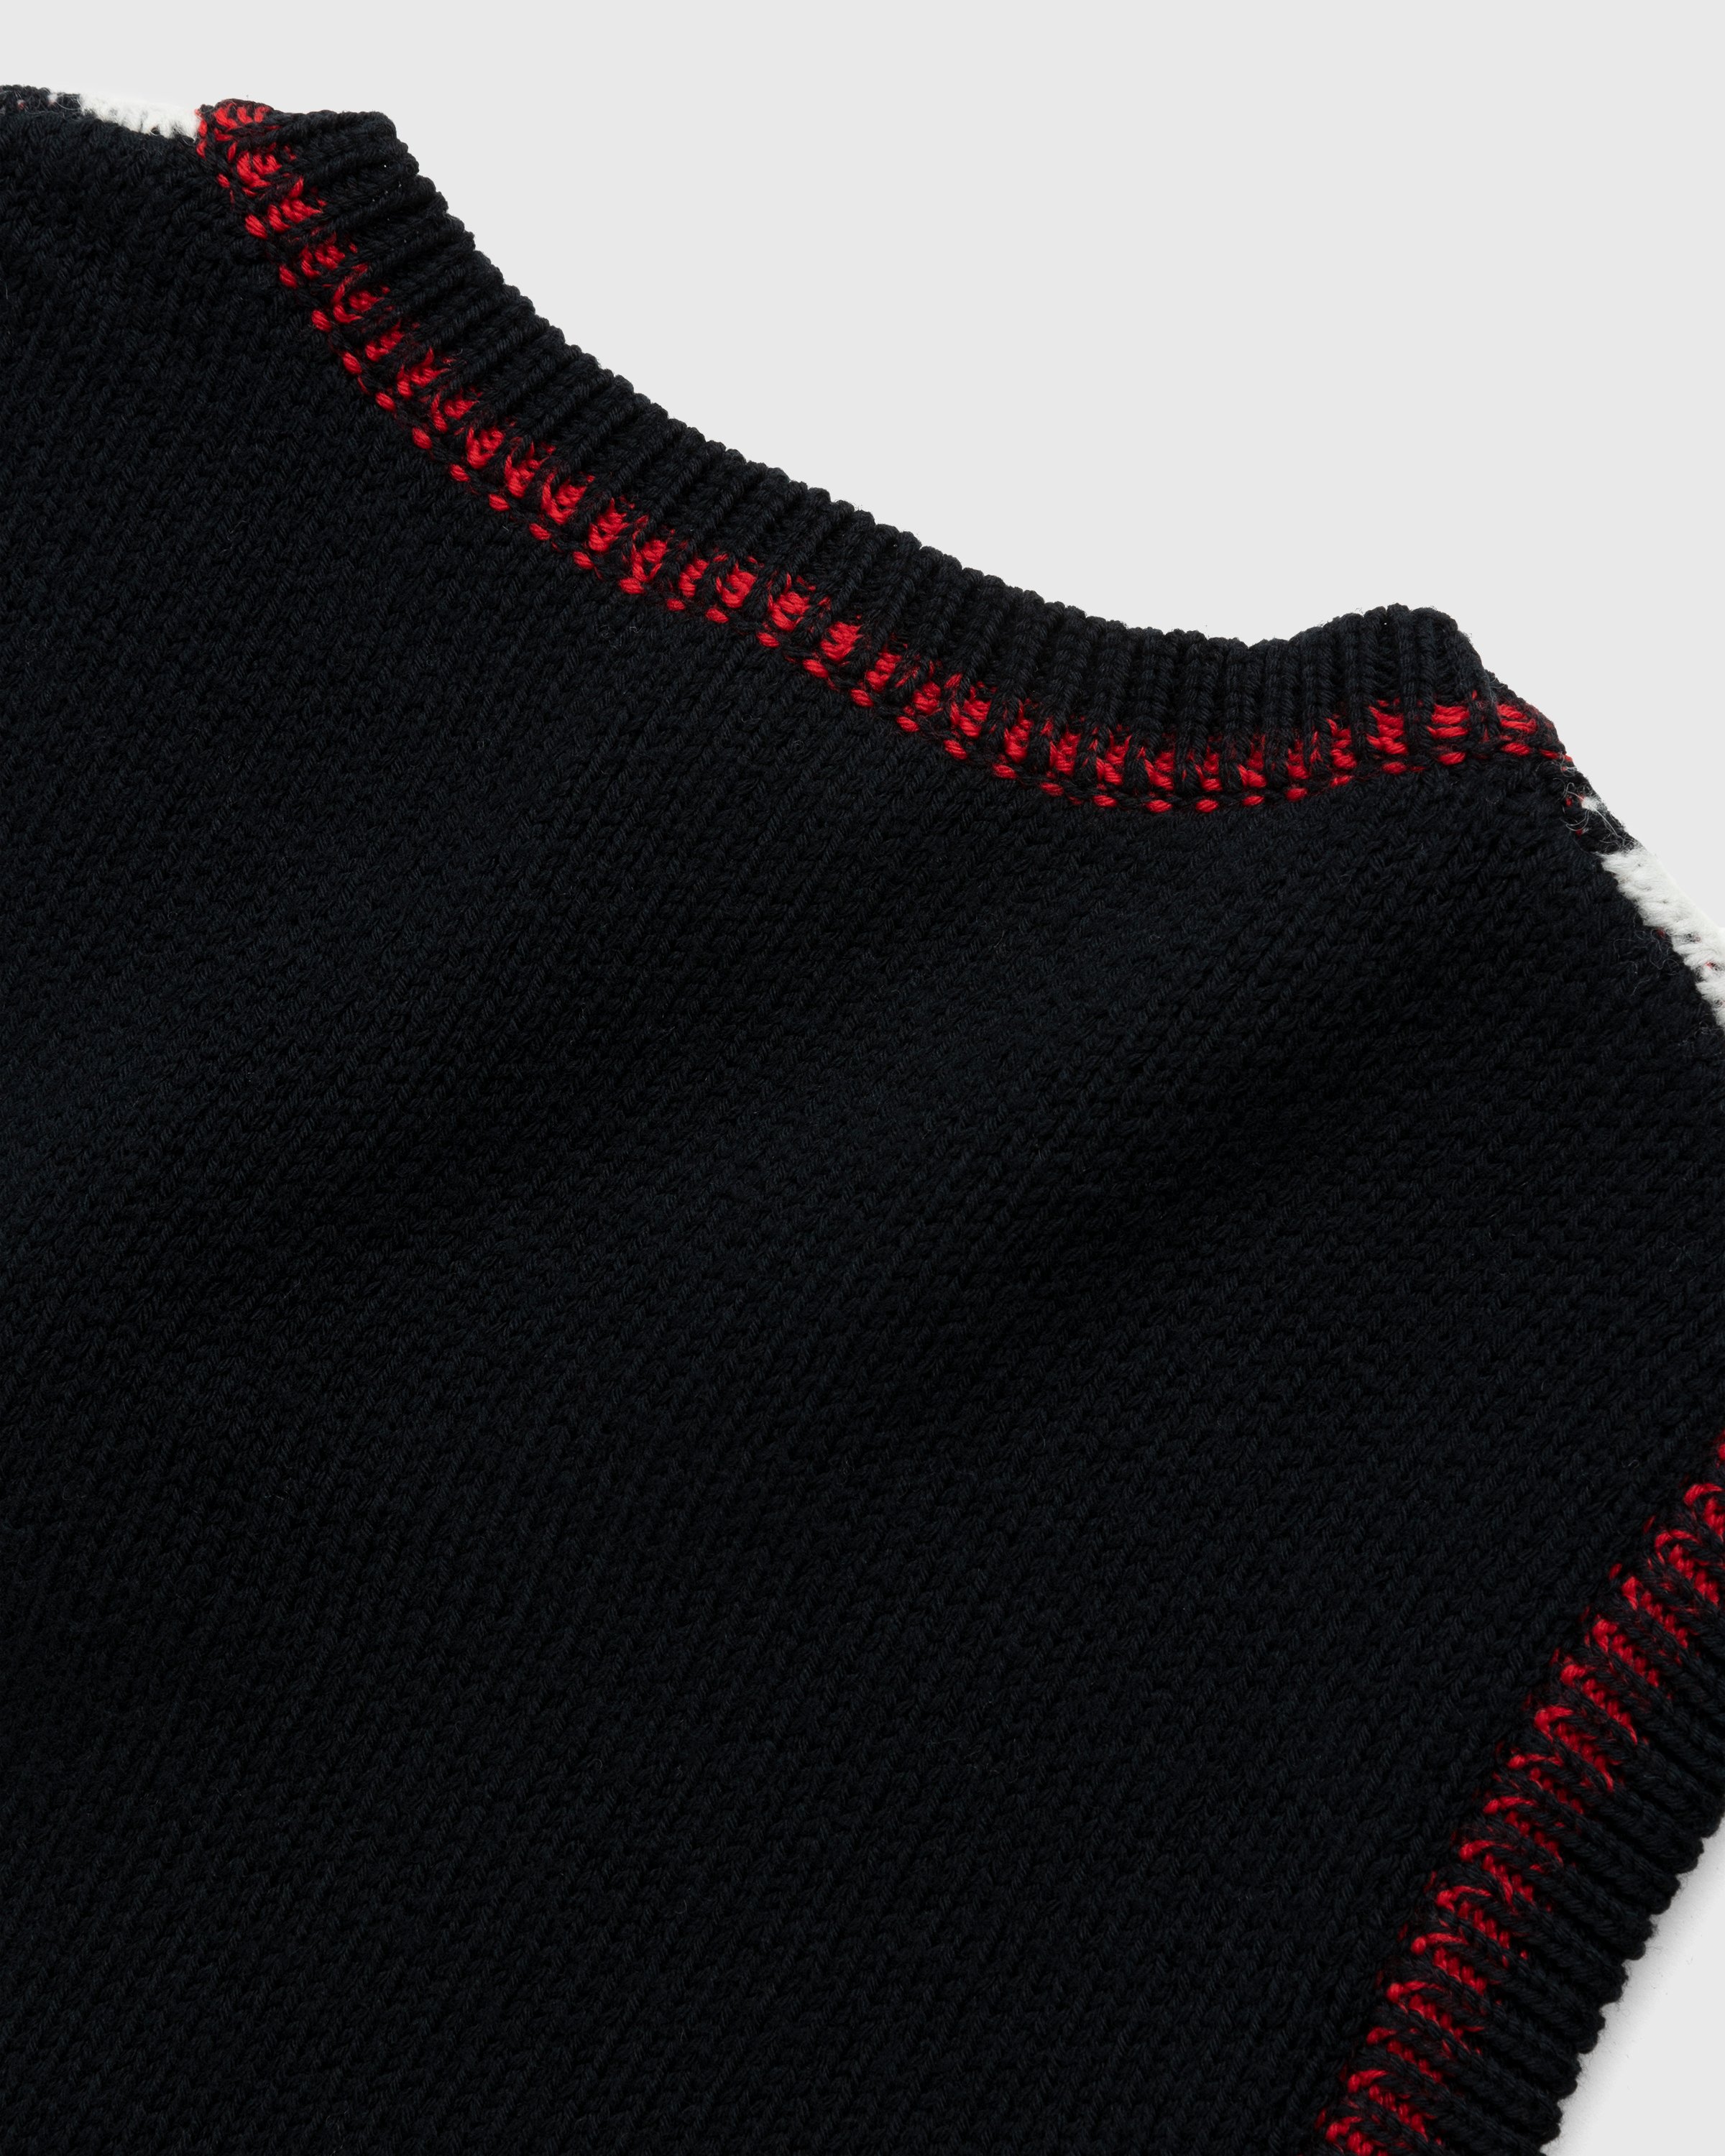 Marine Serre - Harlequeen Pullover V-Neck Black - Clothing - Black - Image 3